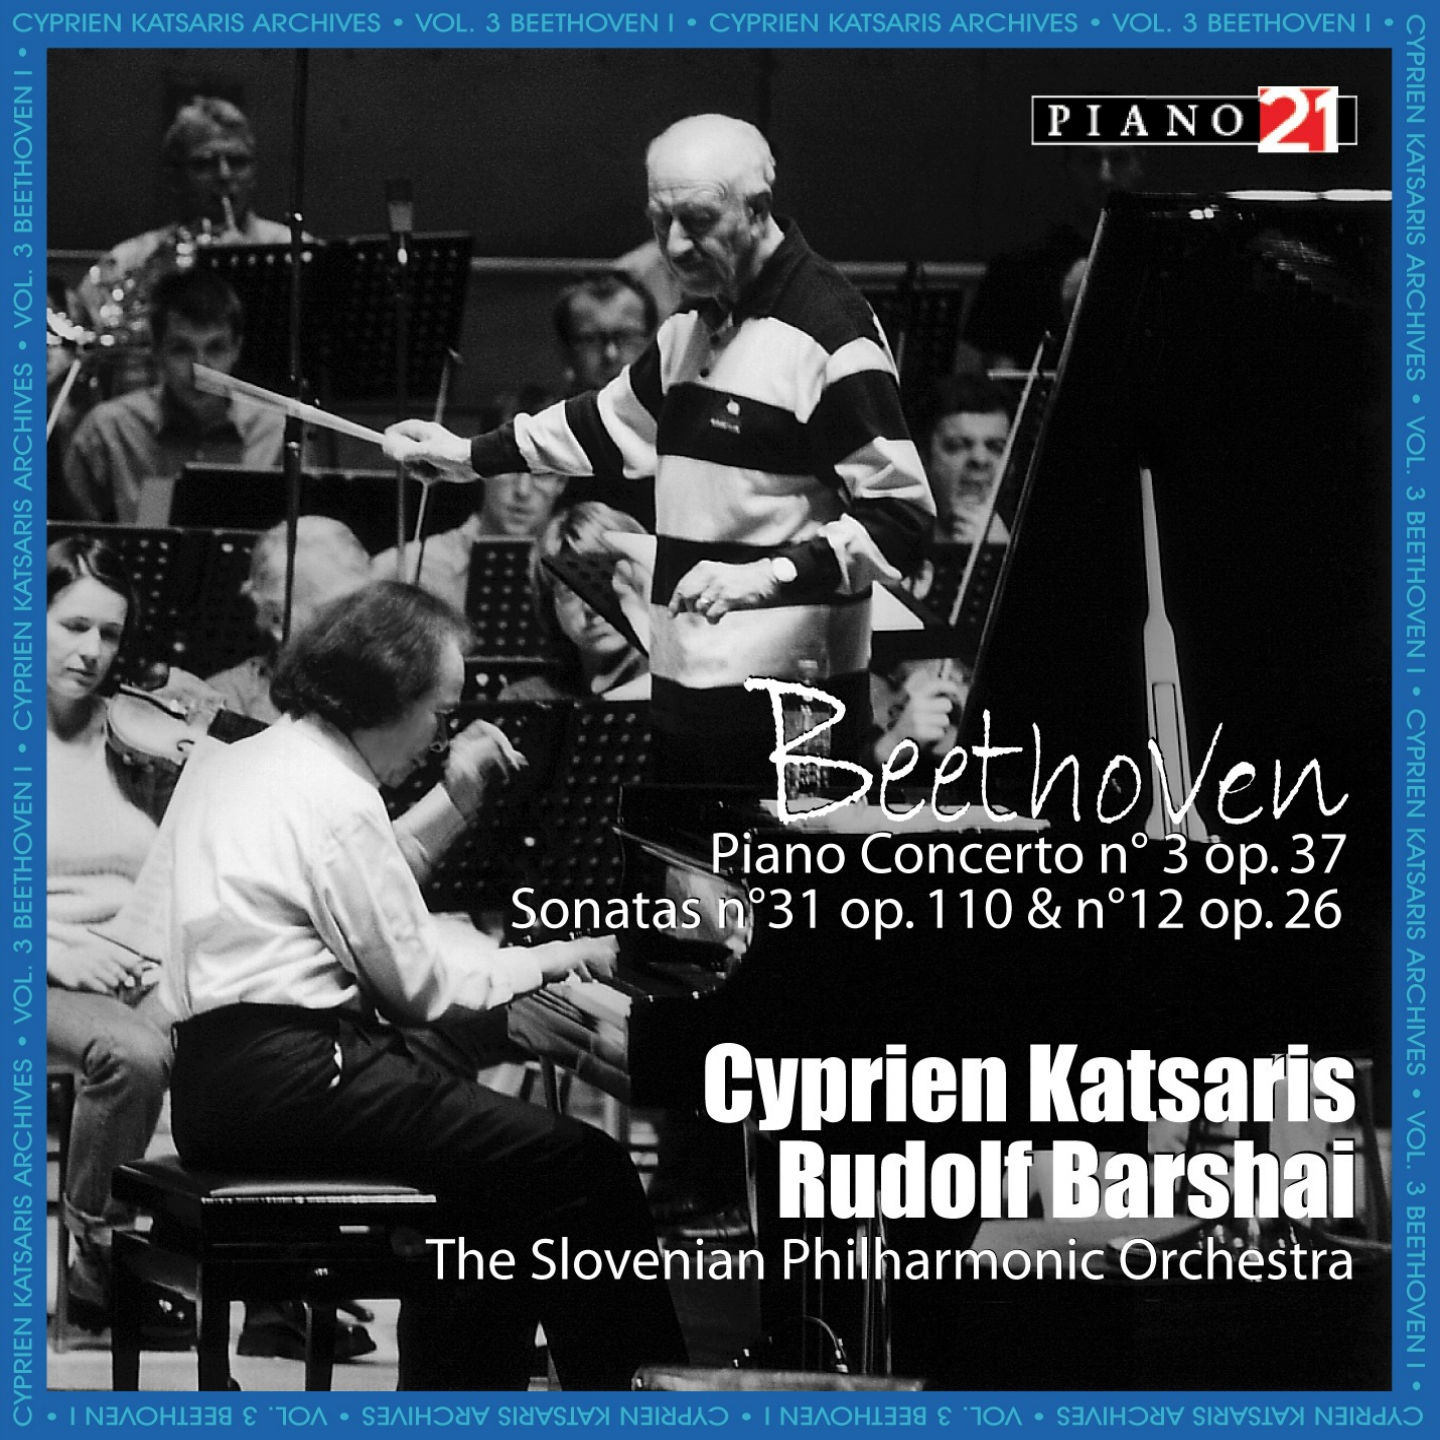 Beethoven: Concerto No. 3, Sonatas Nos. 31 & 12 (Cyprien Katsaris Archives)